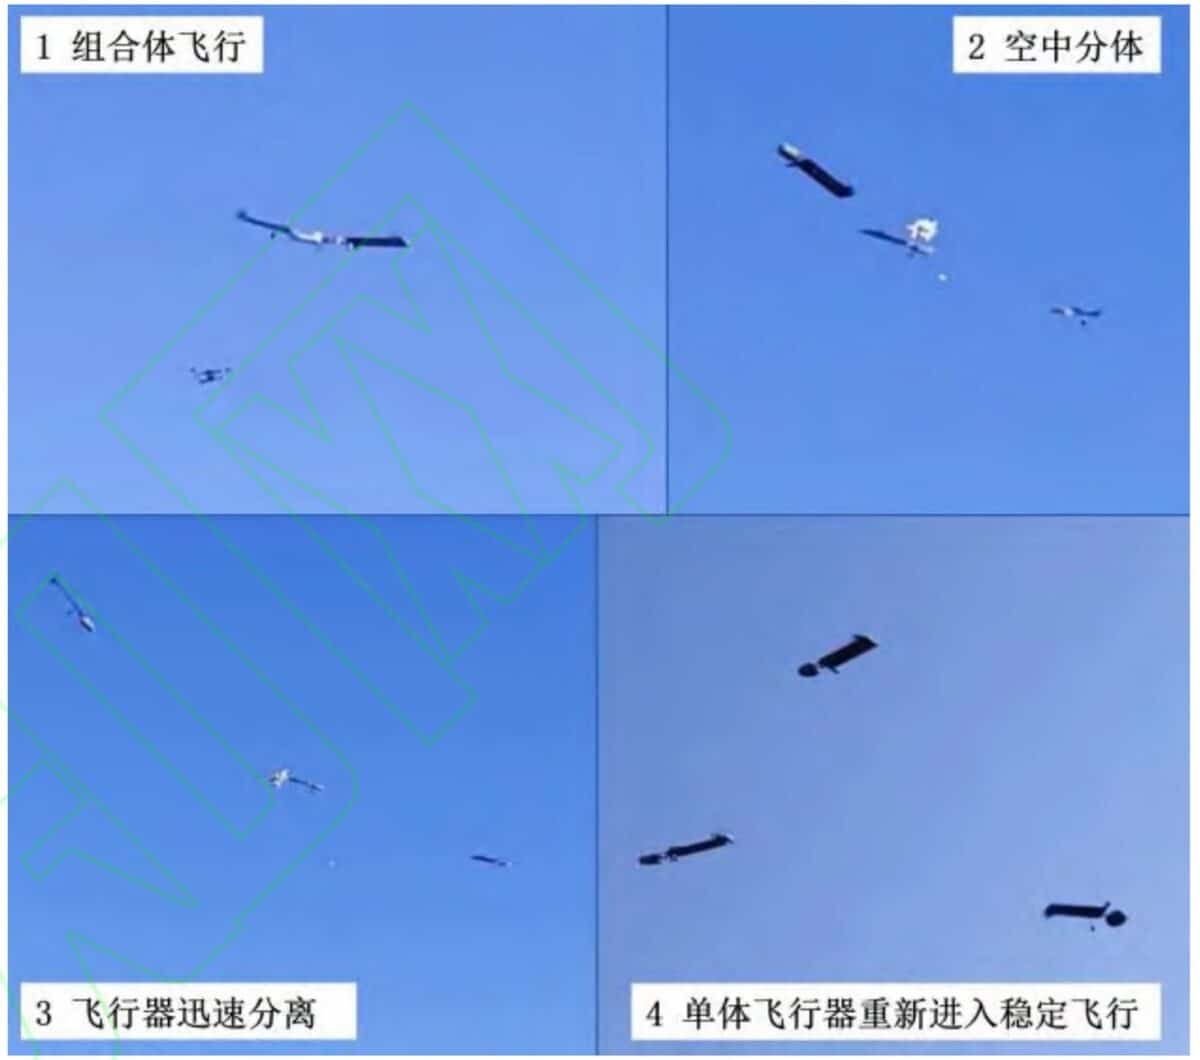 Китайские ученые разработали новый тип боевых дронов, которые превращаются в рой